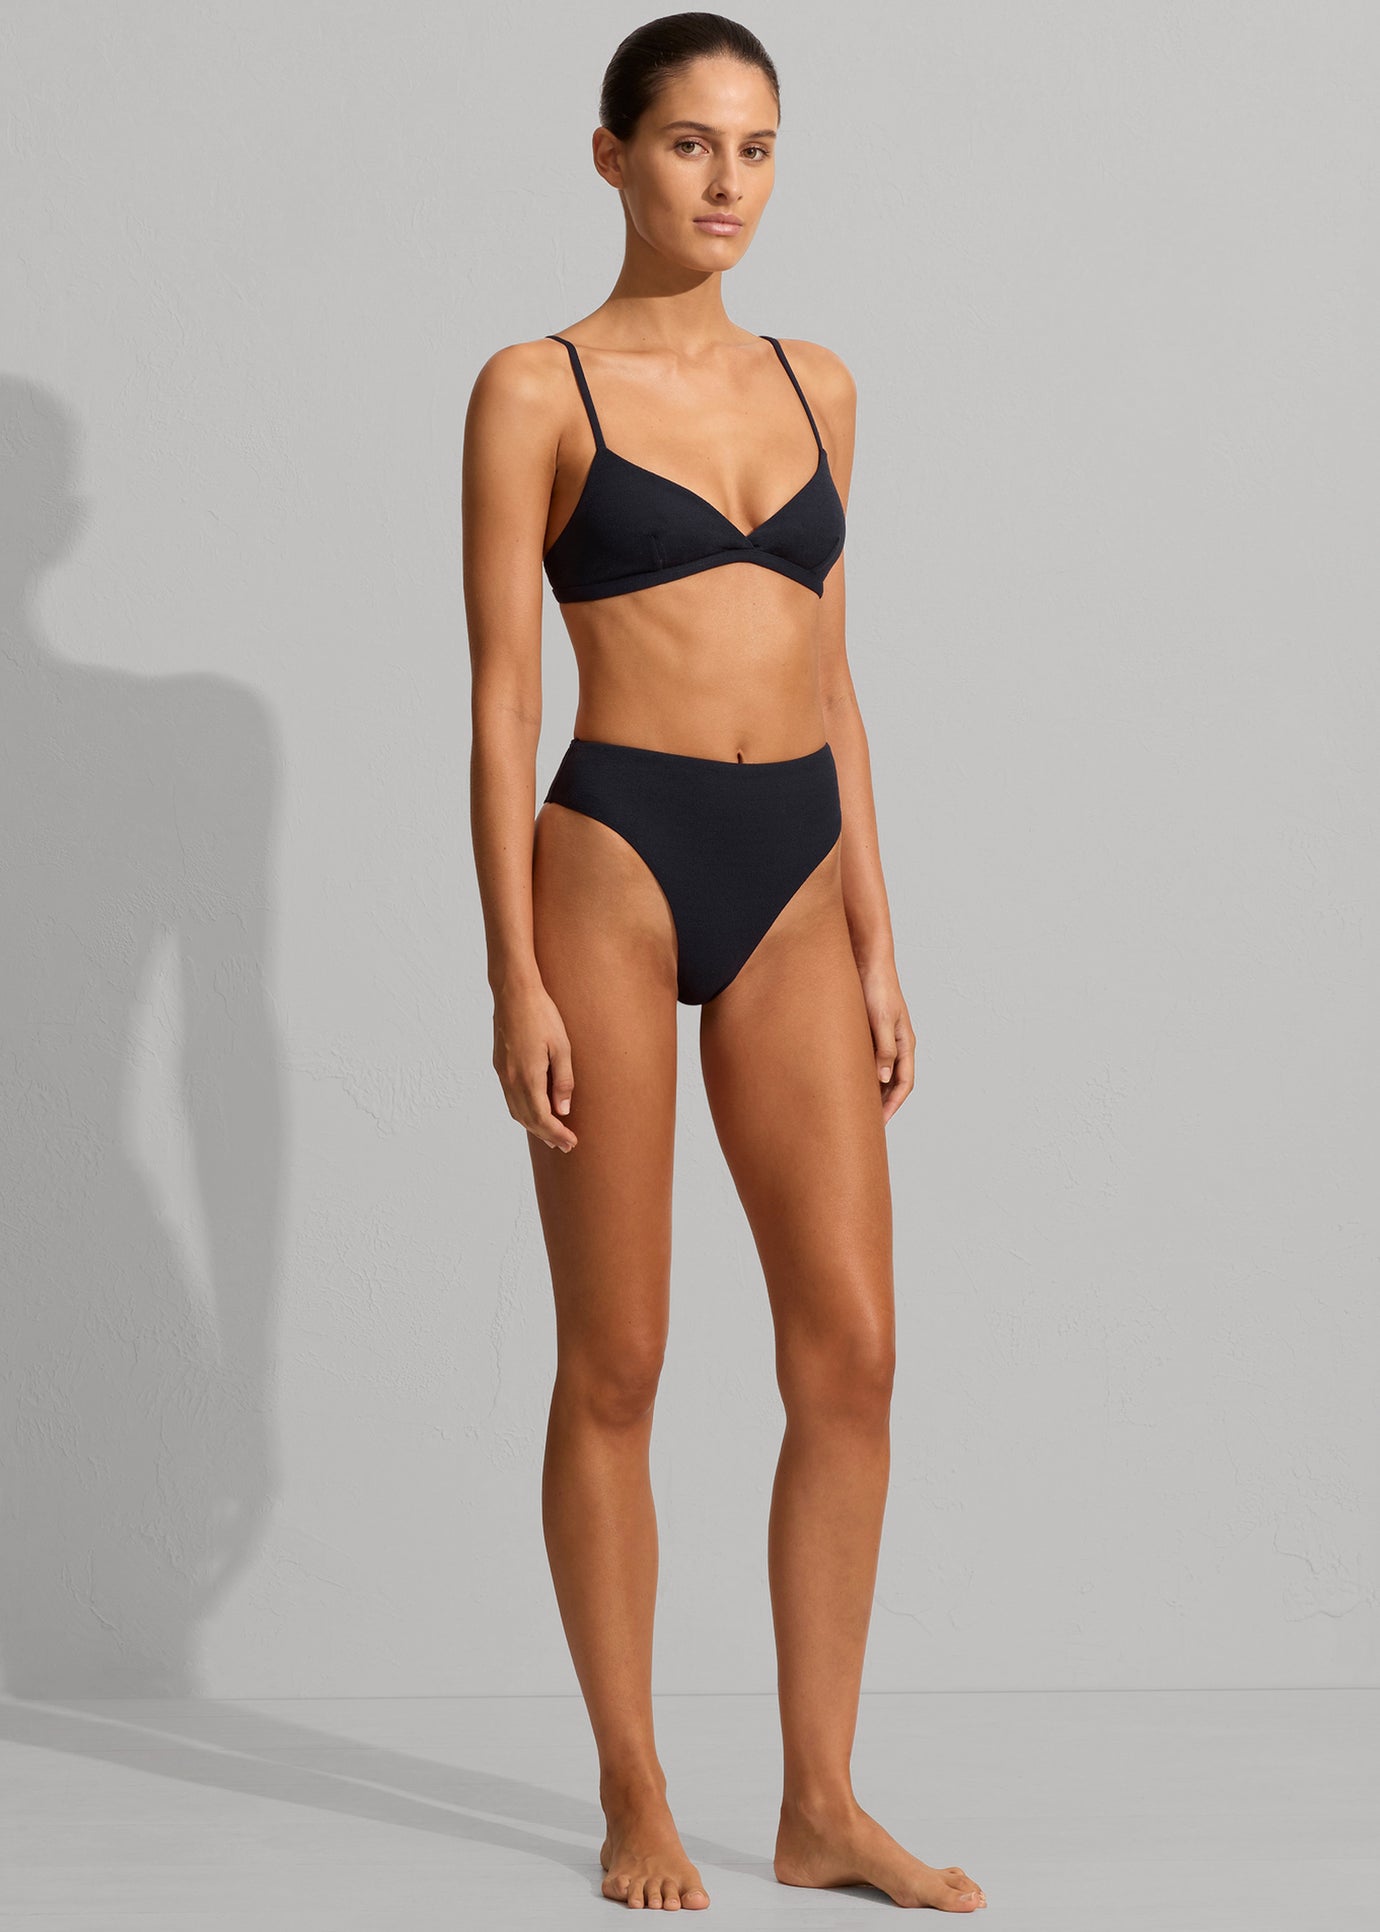 Matteau Nineties High Waist Bikini Brief - Navy Crinkle - 1